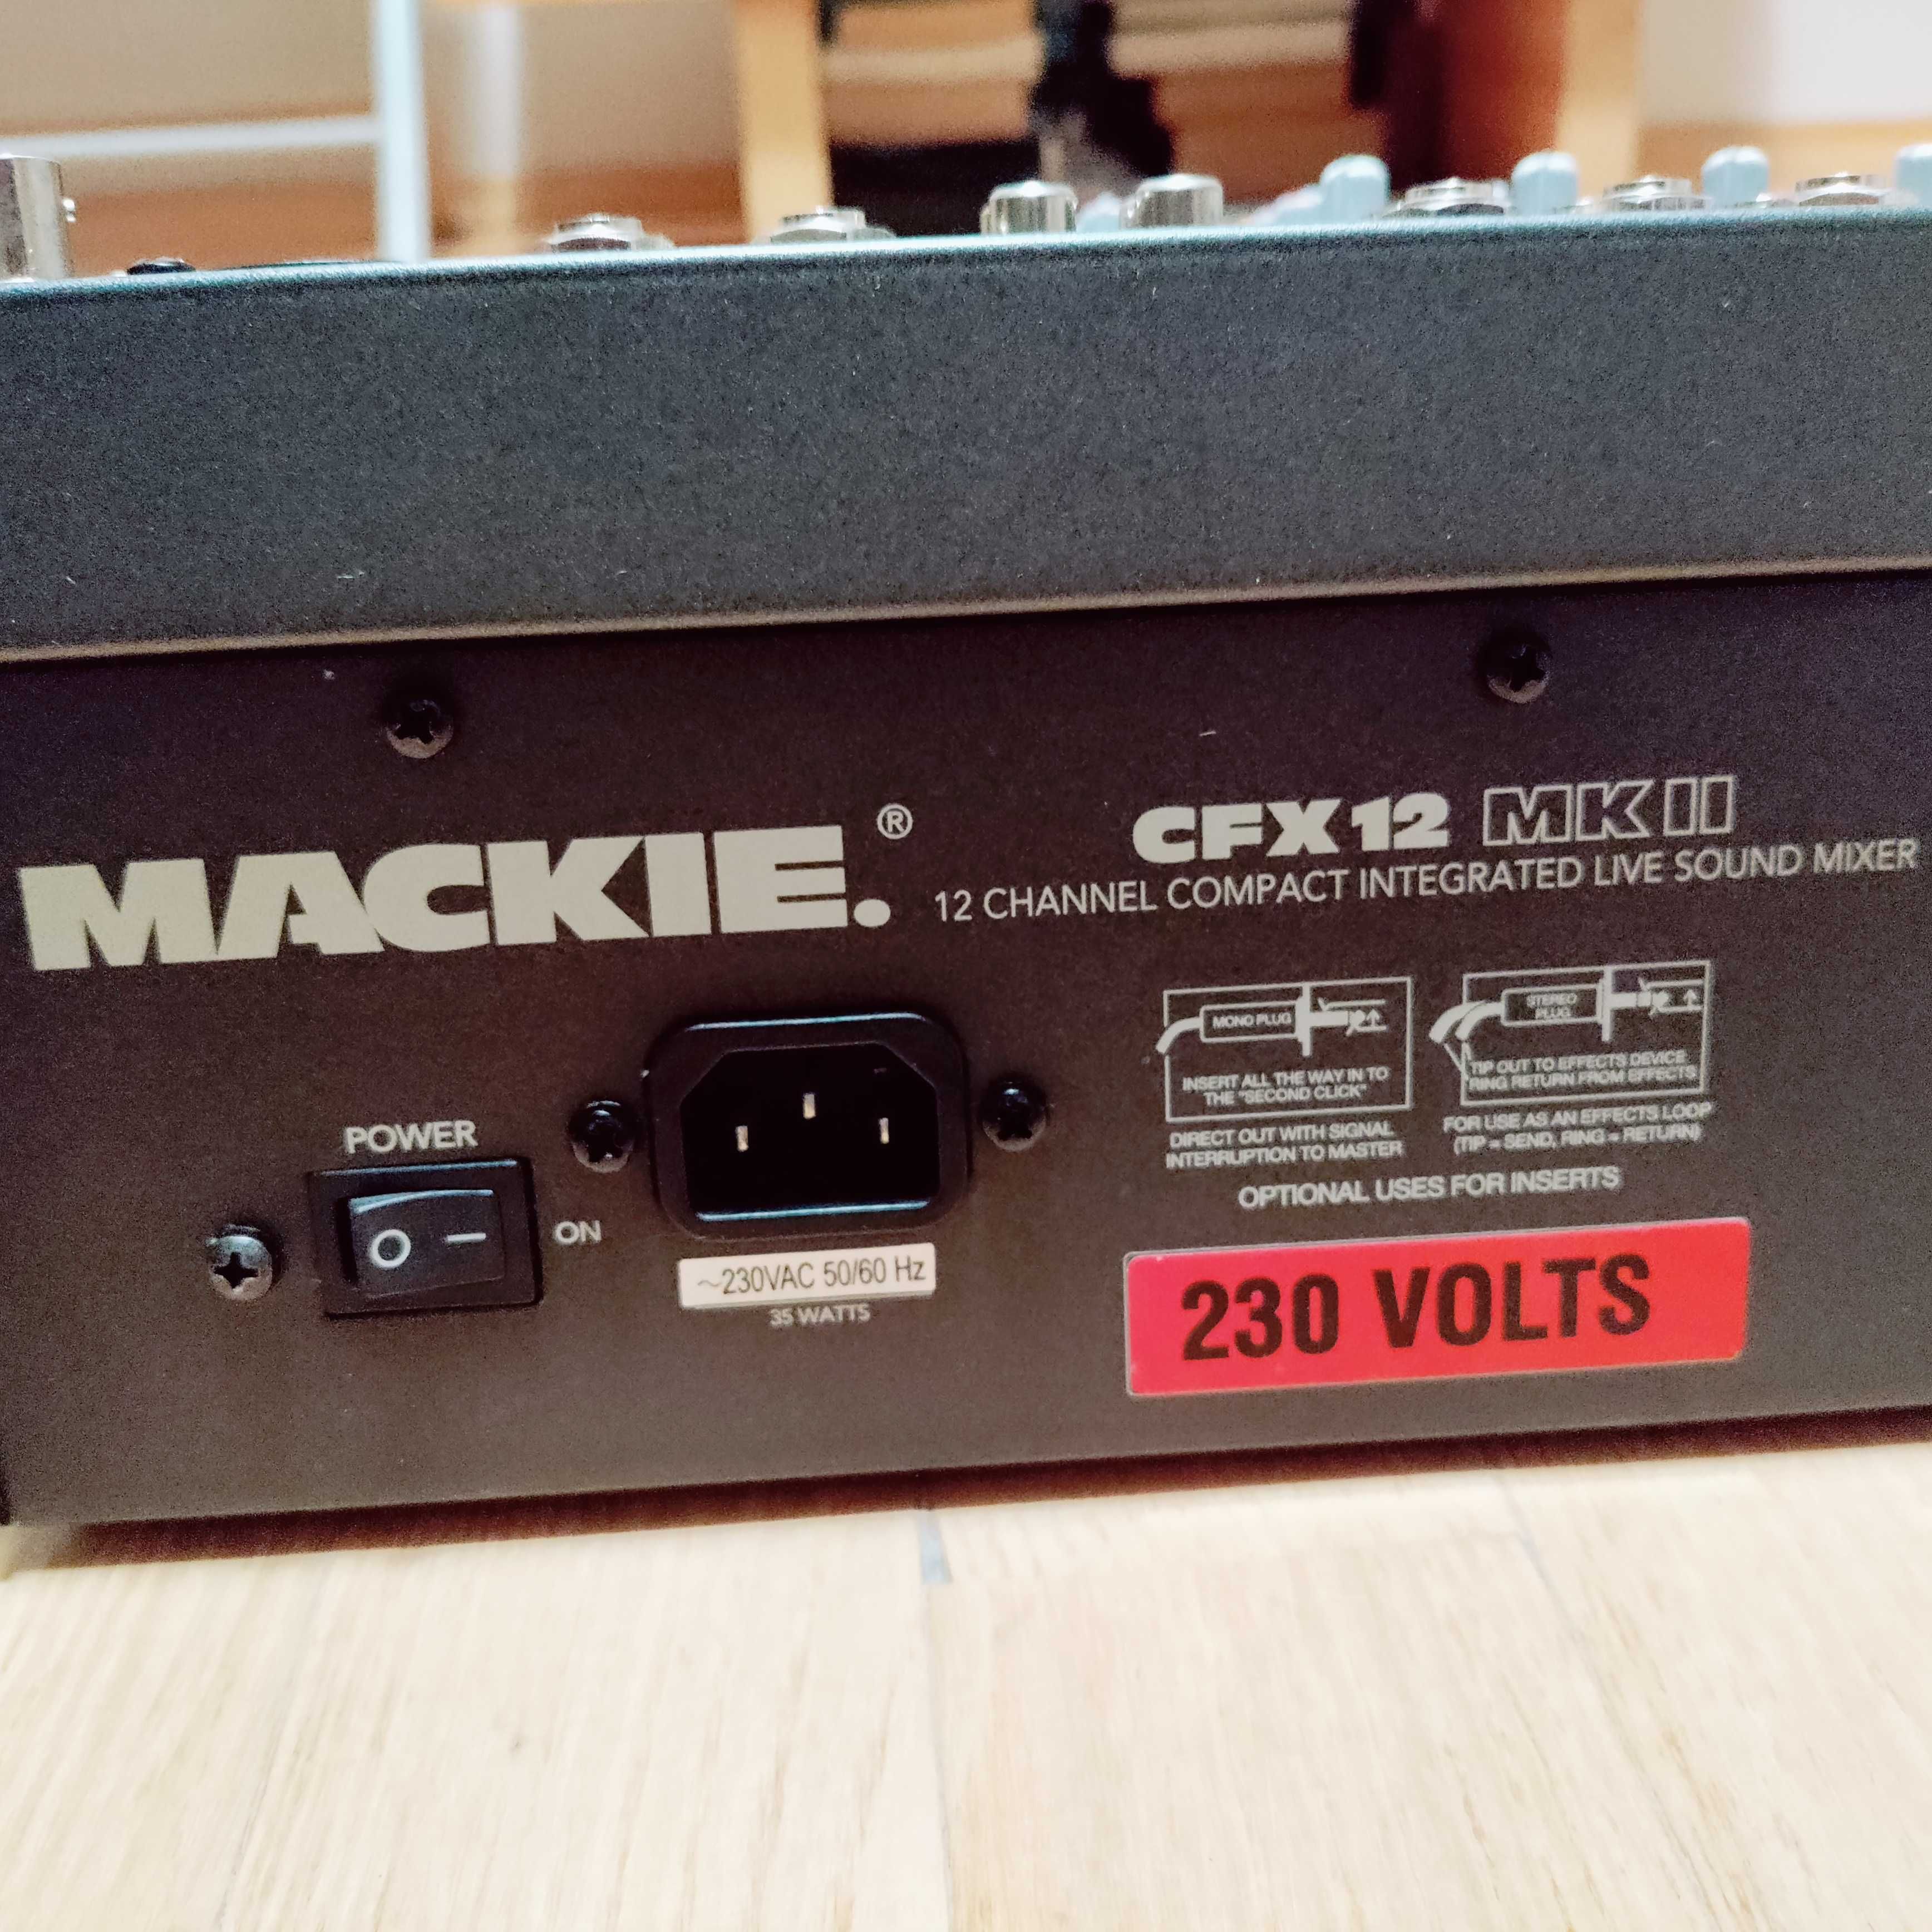 Mackie CFX 12 mixer